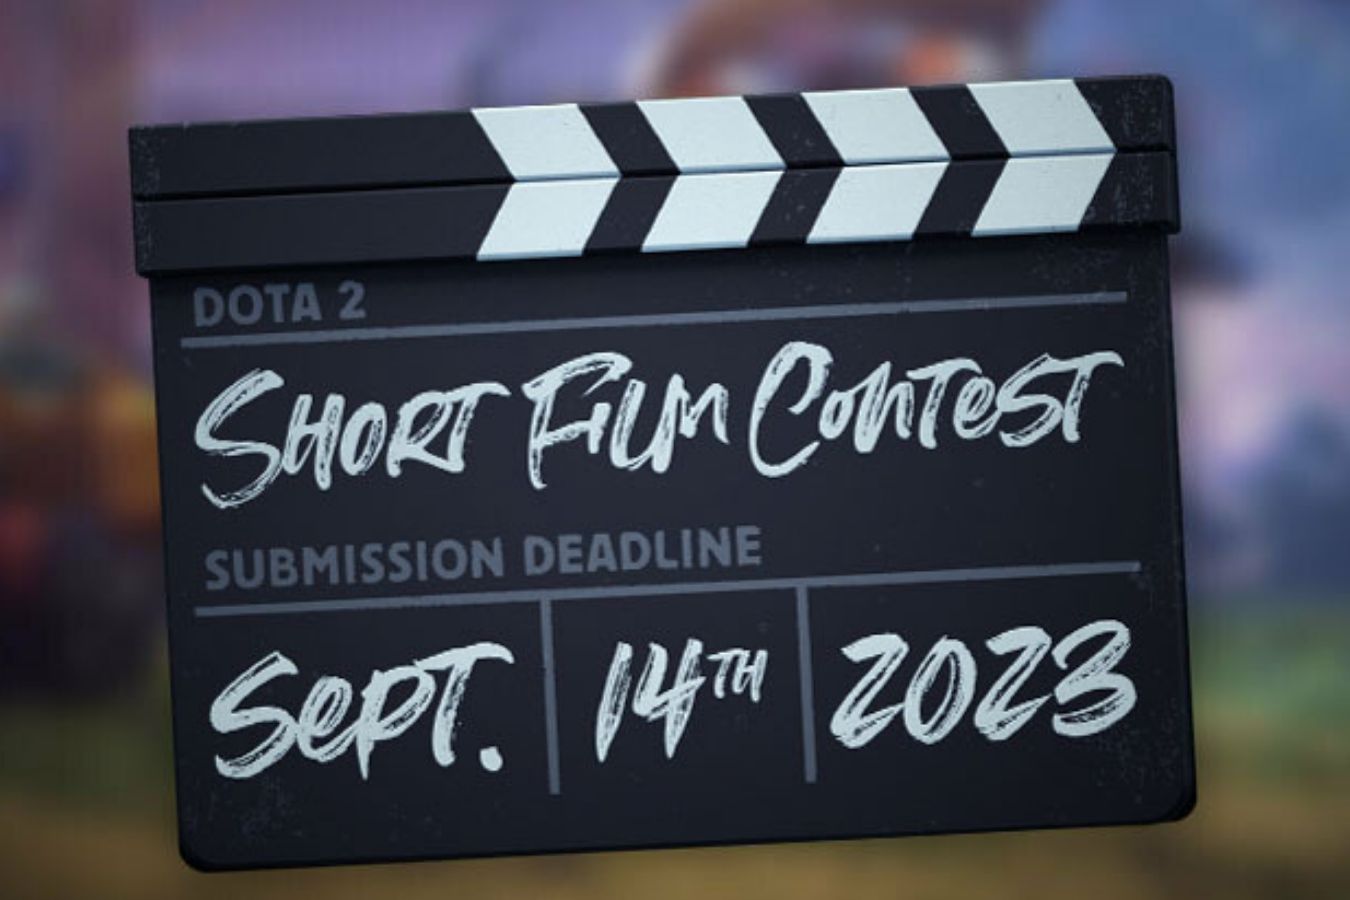 Short film contest dota 2 что это (120) фото